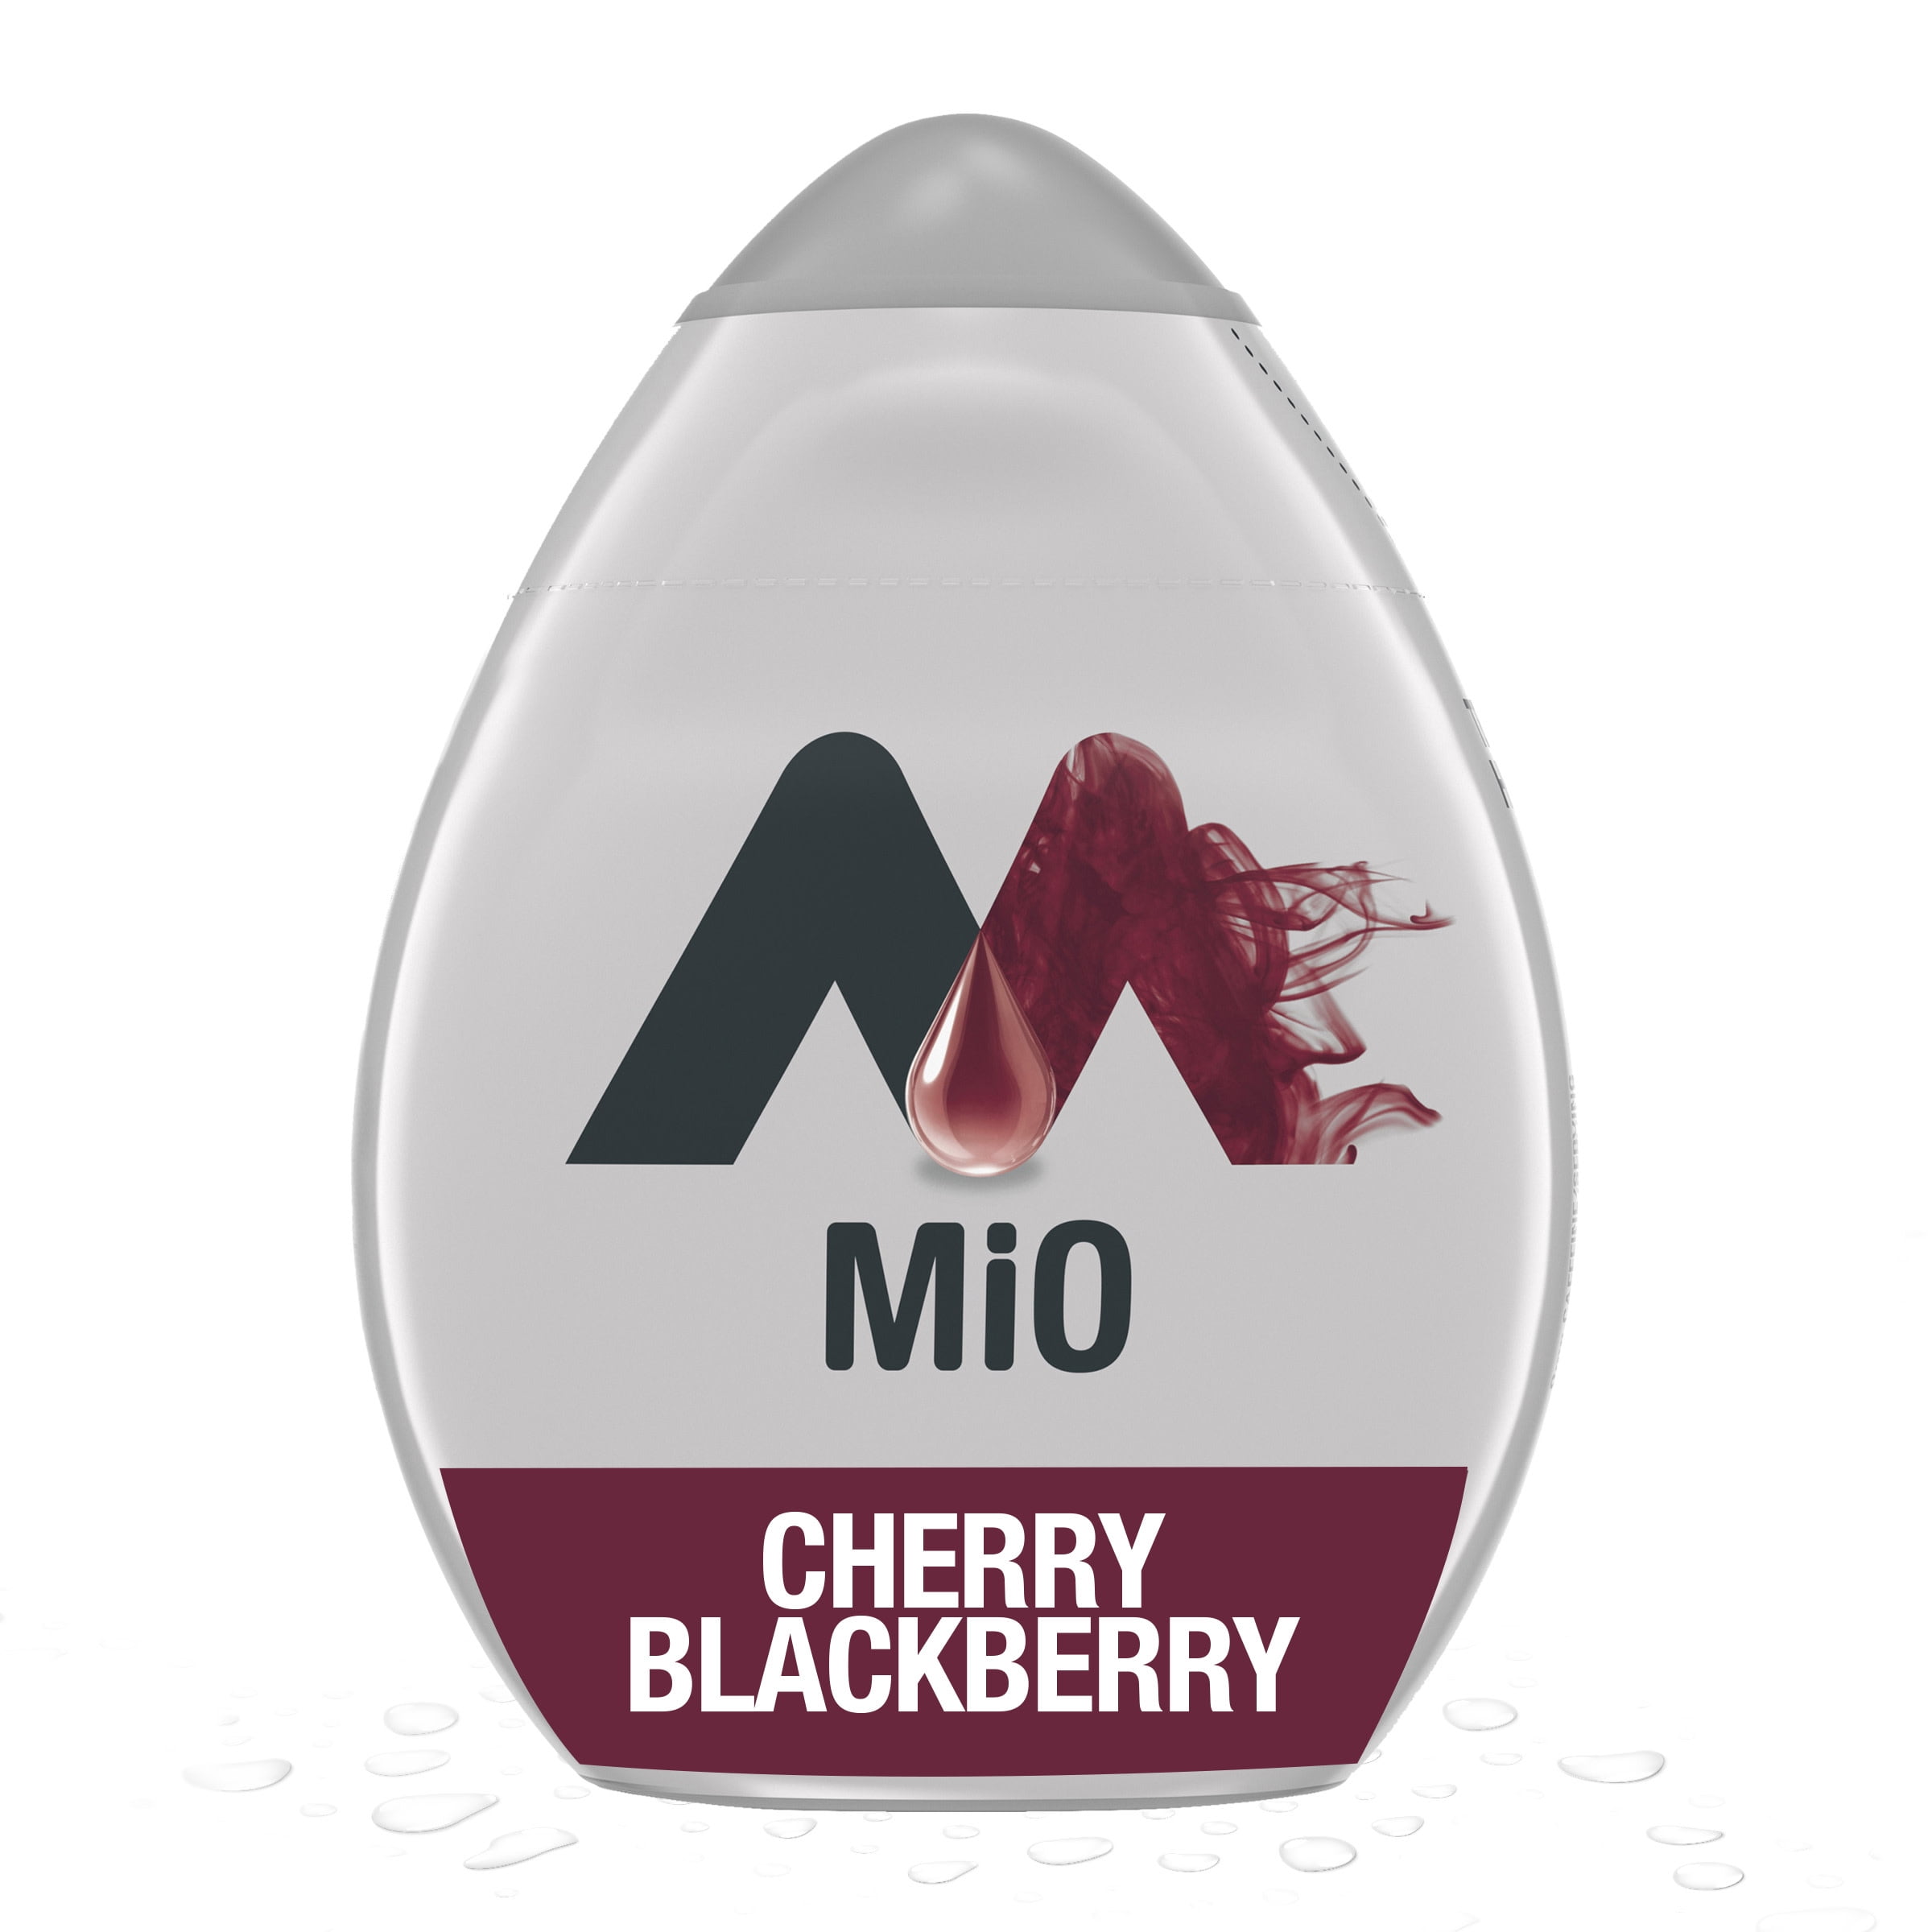 MiO Cherry Blackberry Sugar Free Water Enhancer, 1.62 fl oz Bottle